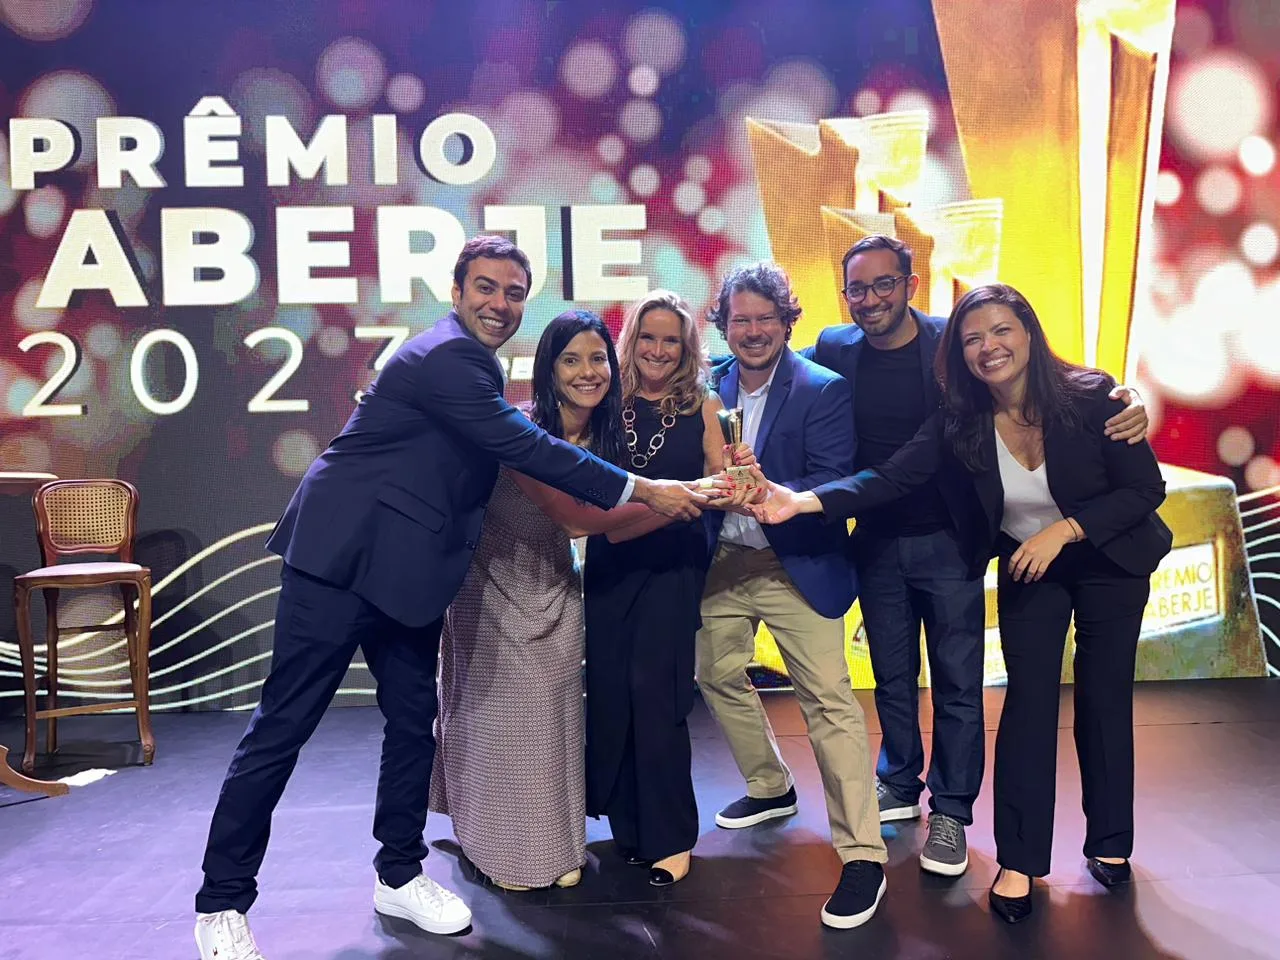 equipe Braóes digital publishing em palco comemorando o premio aberje 2023 pelo portal próximo nível da embratel